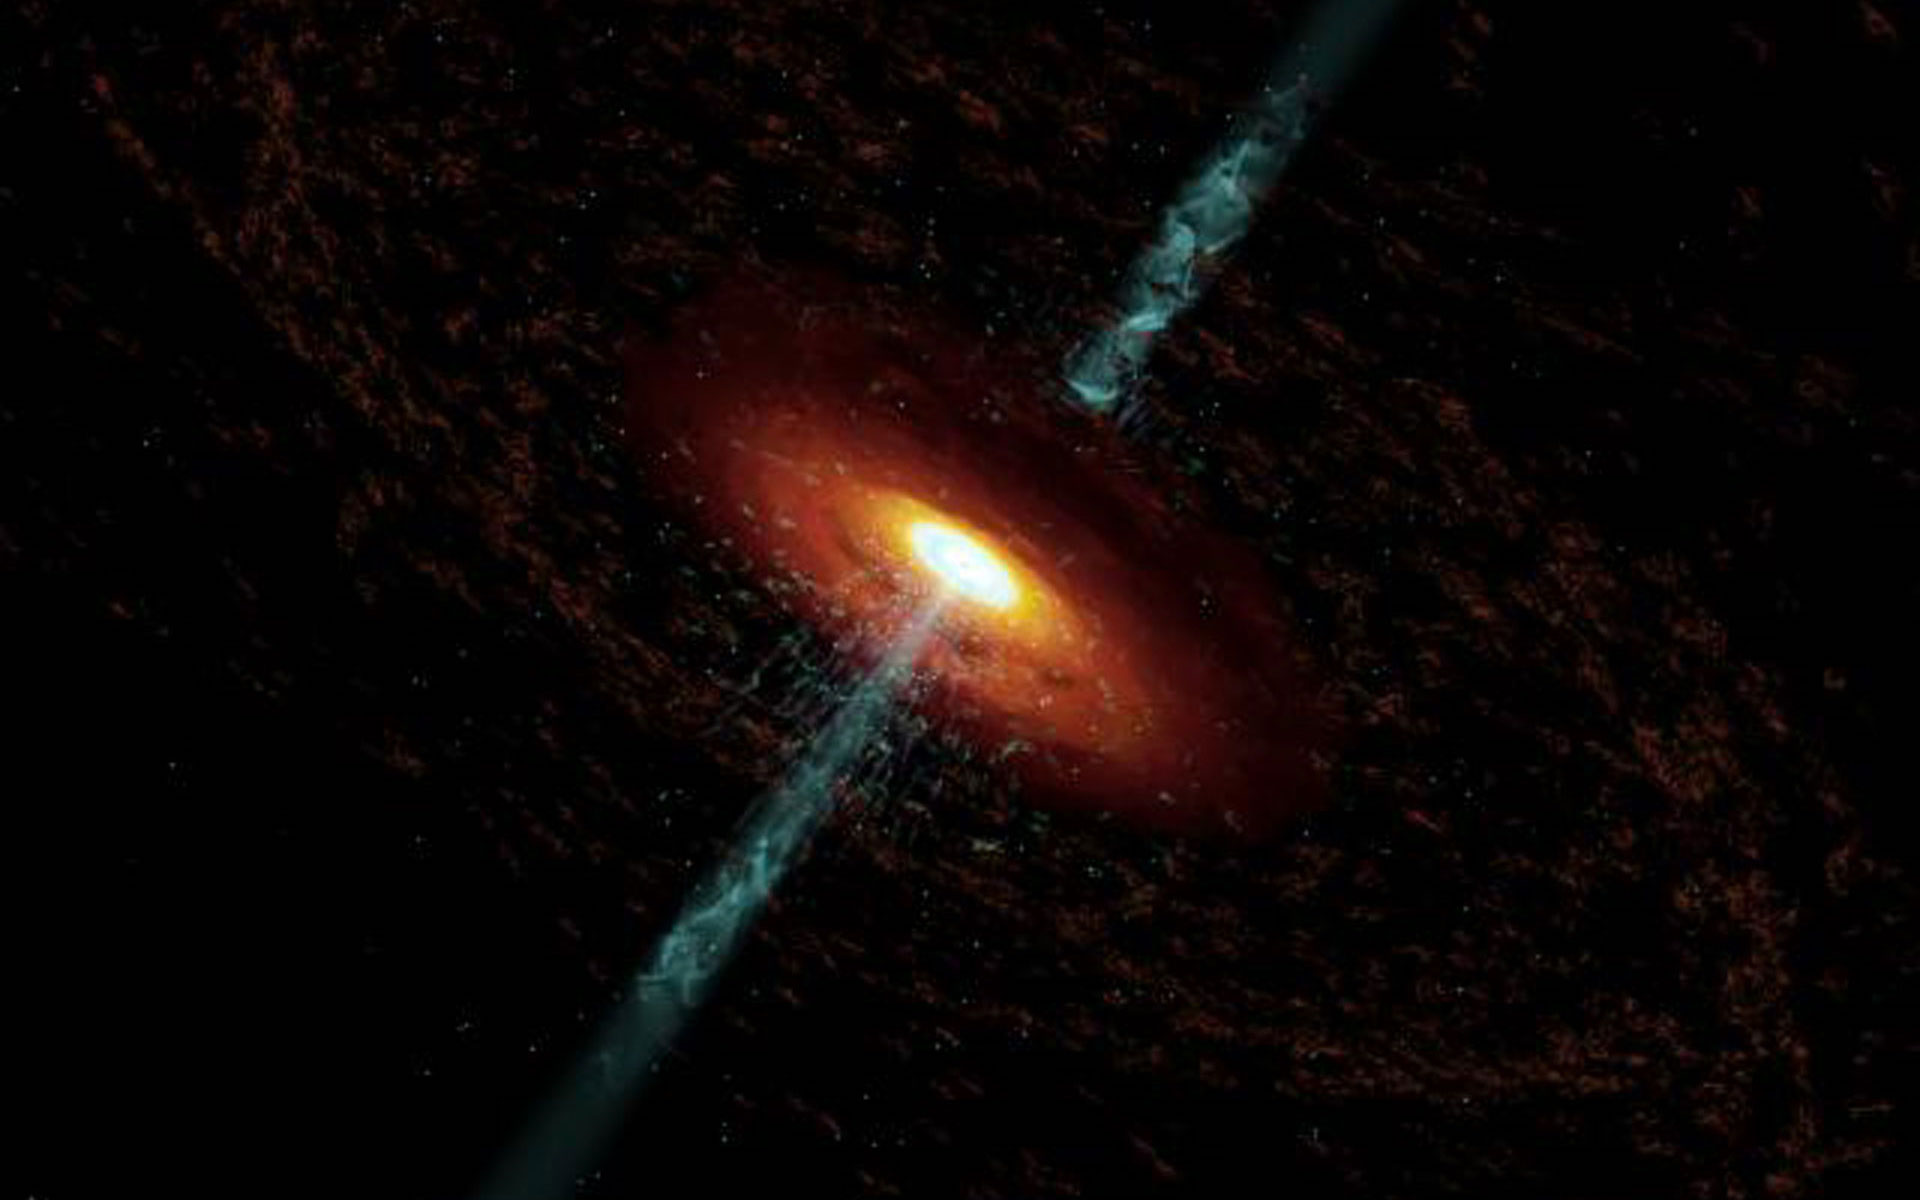 كان من المفترض أن يكون الكون المبكر غارقًا في المجرات النشطة، لكن تلسكوب جيمس ويب الفضائي لم يجدها